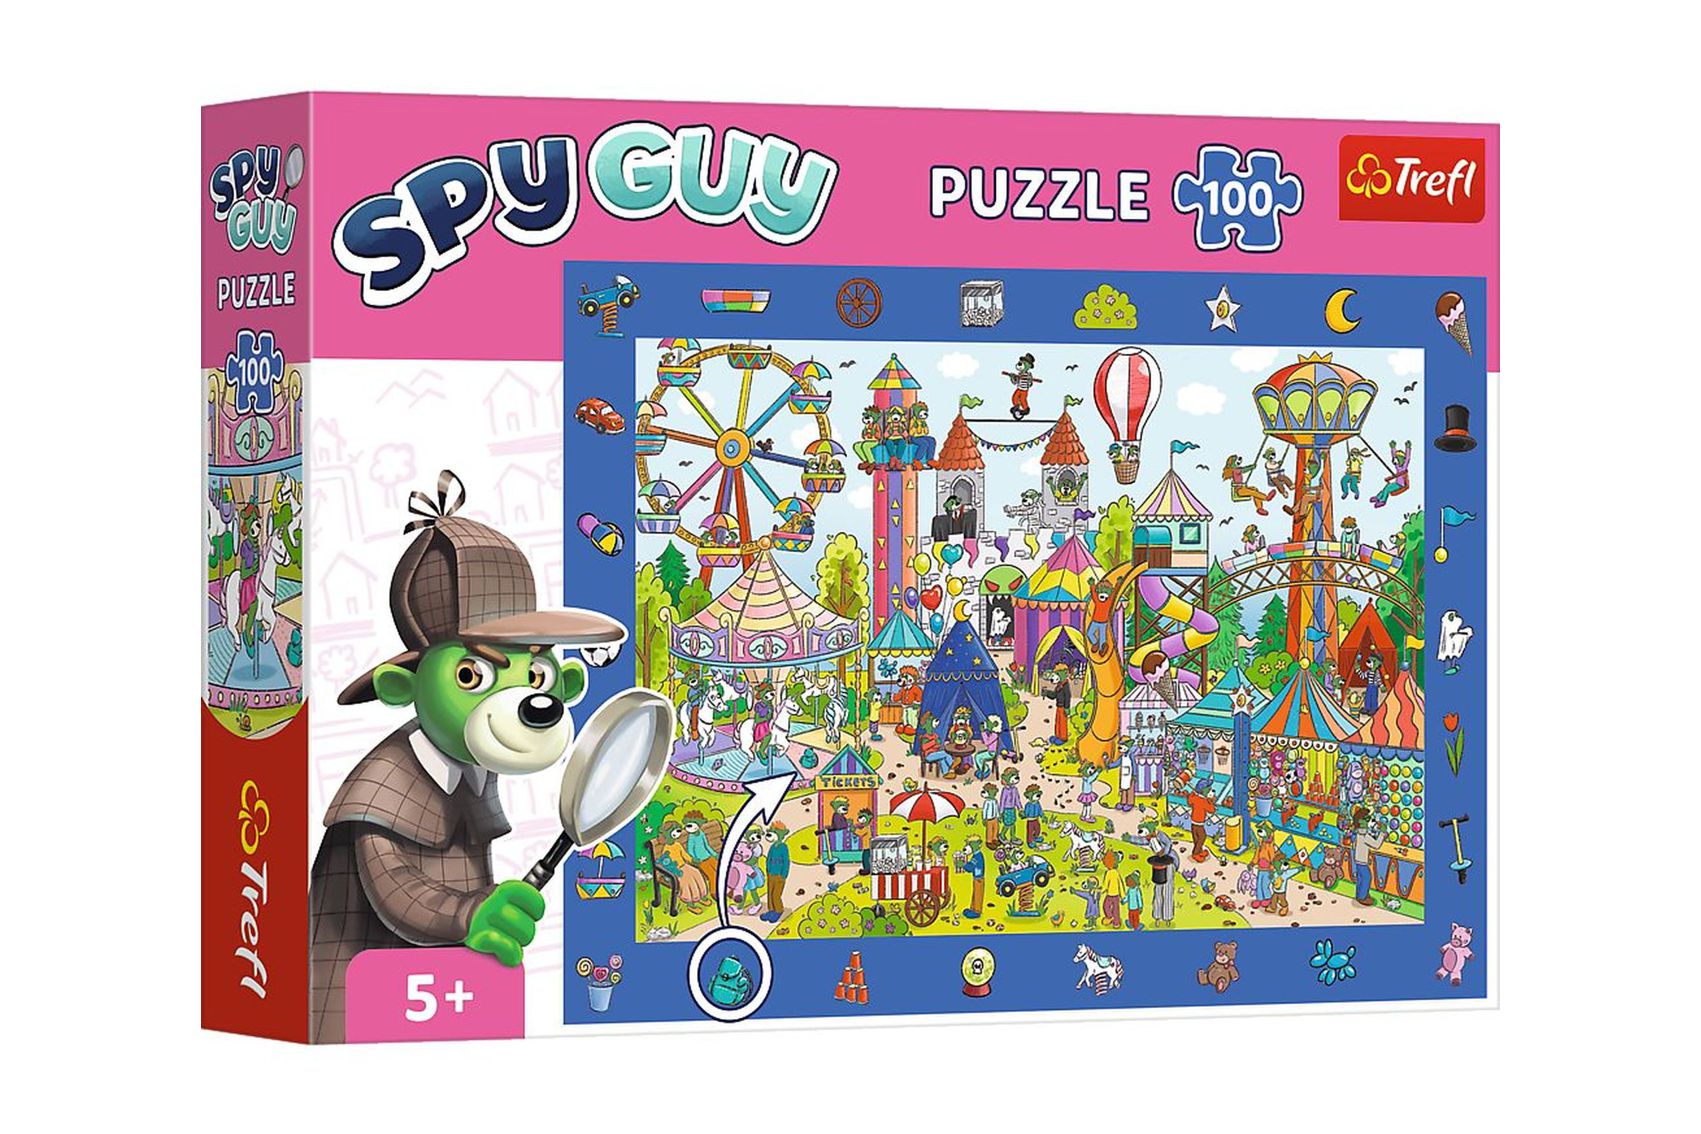 Trefl Puzzle Spy Guy - Zábavní park 18,9x13,4cm 100 dílků v krabici 33x23x6cm